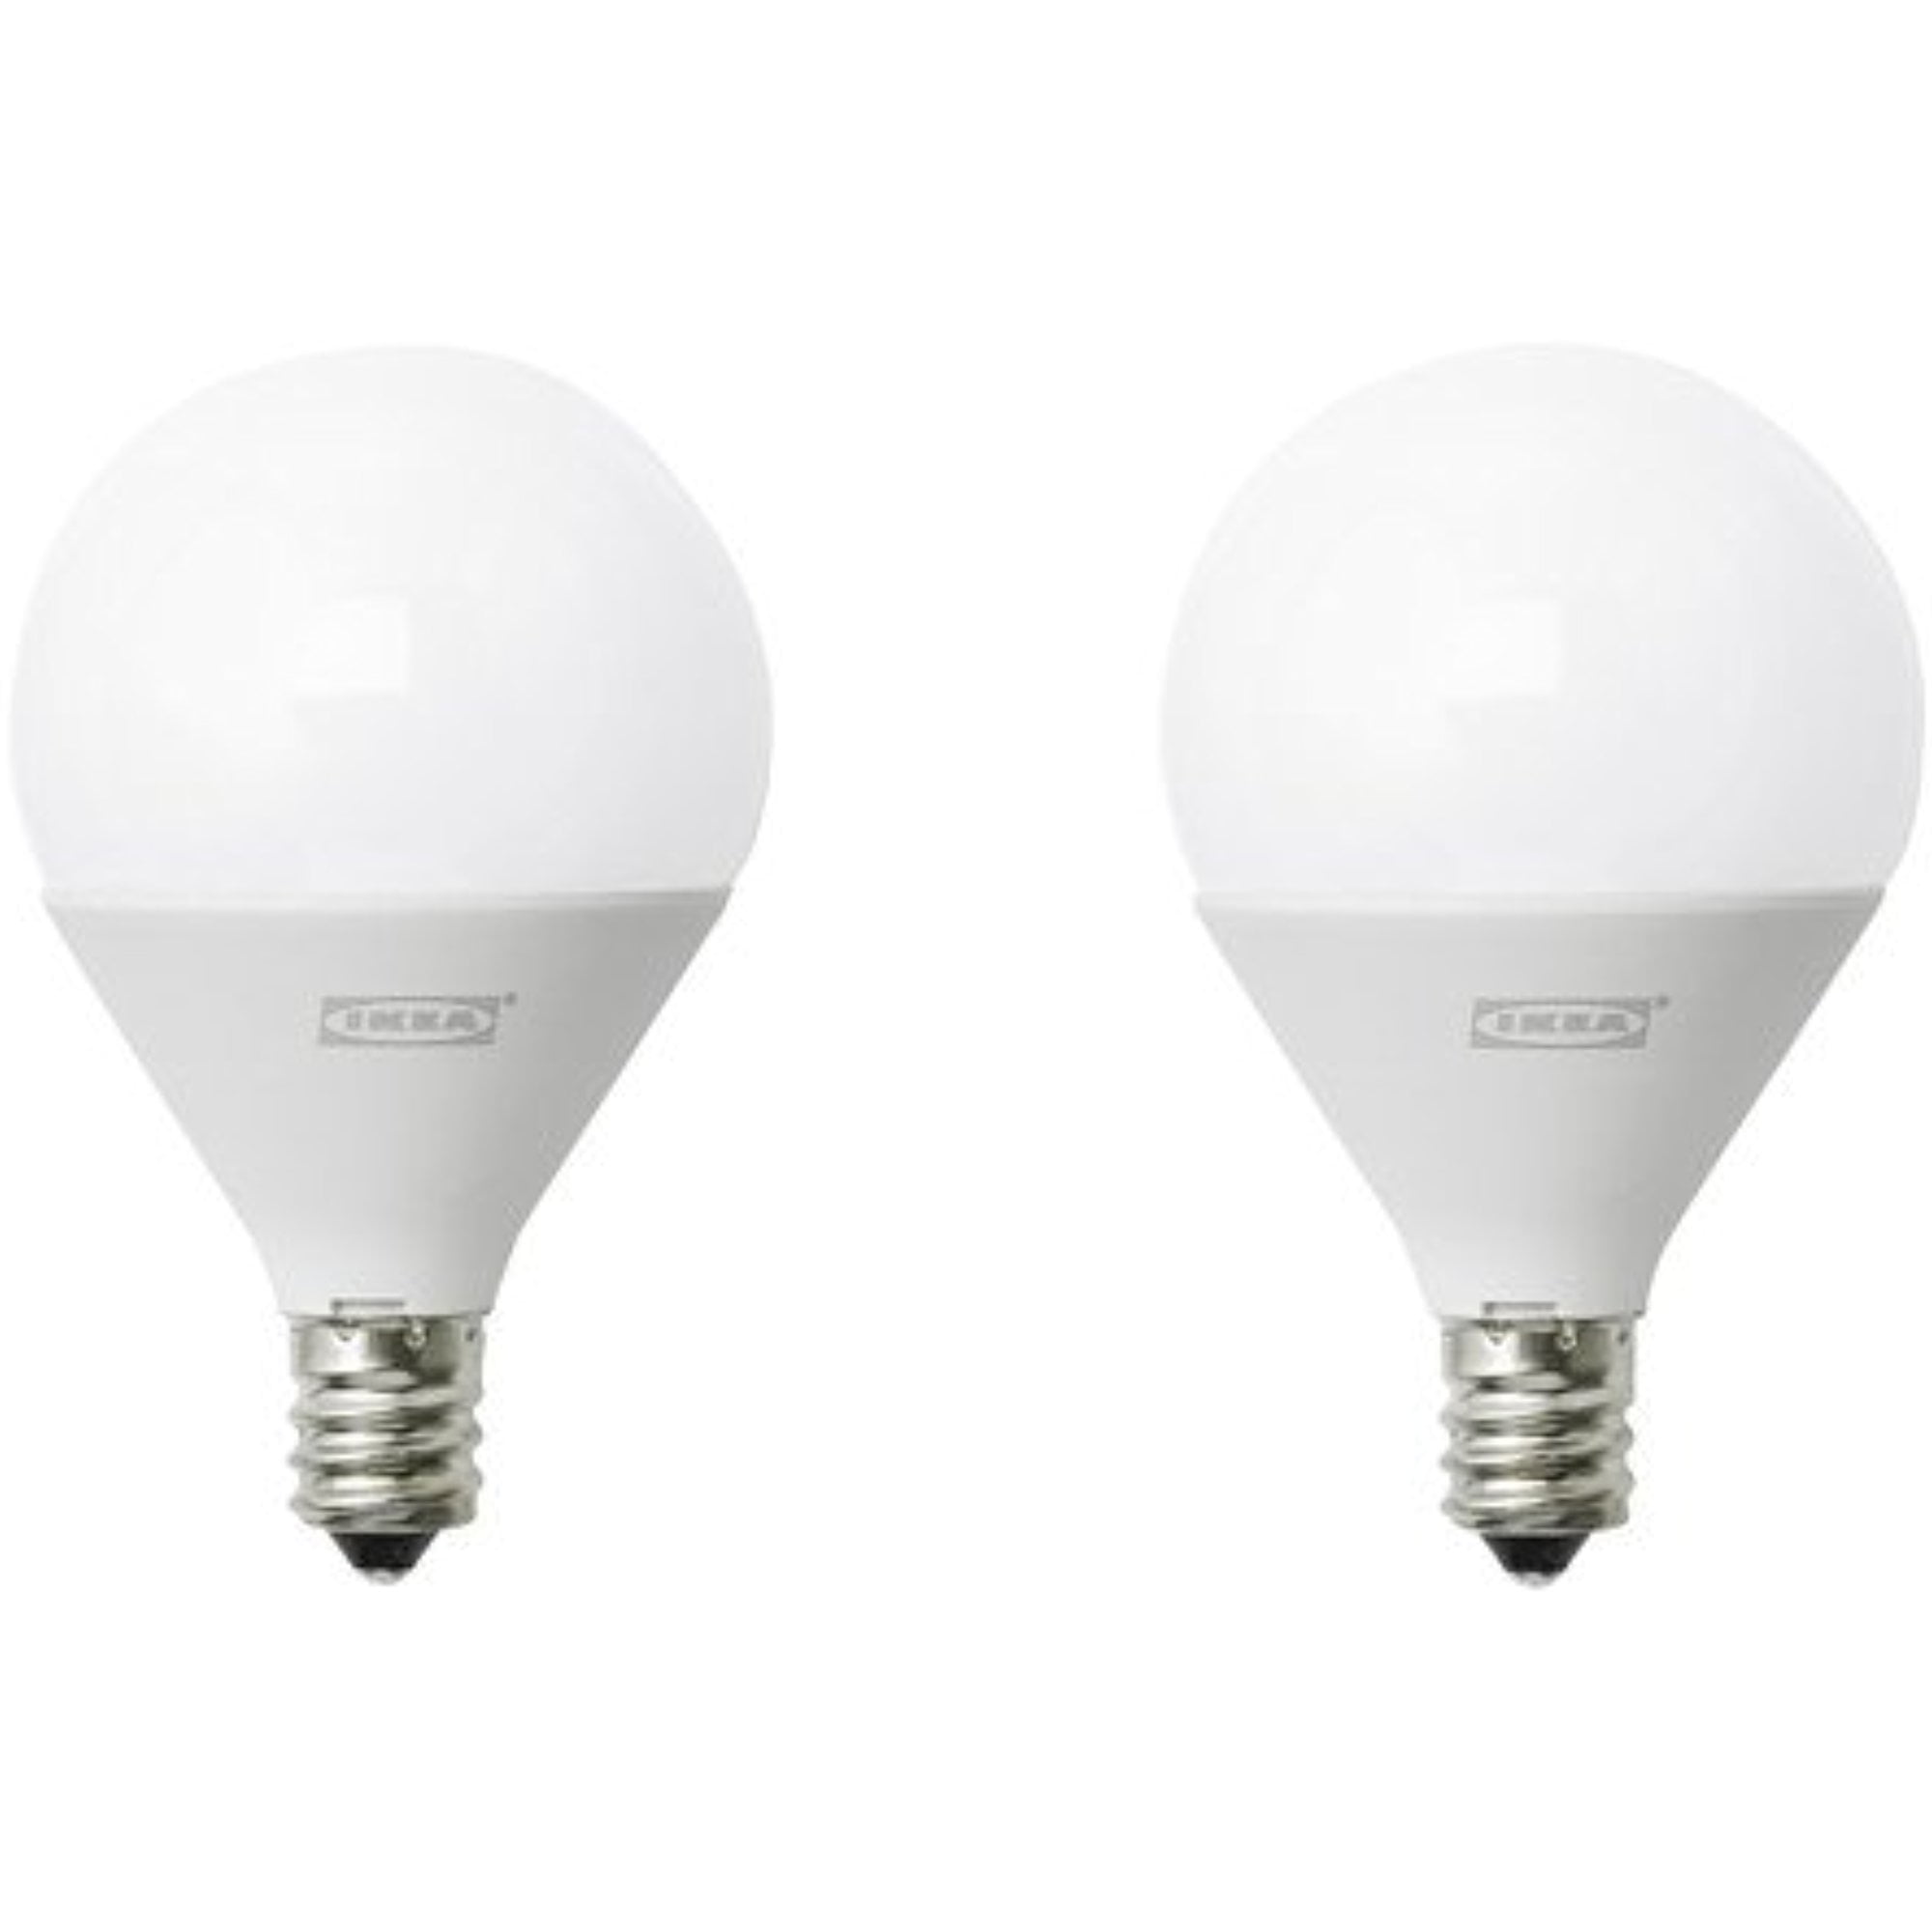 Een hekel hebben aan Bedrijf volwassen Ikea 4 pack of LED bulb E12 200 lumen, globe opal 228.11145.1822 -  Walmart.com